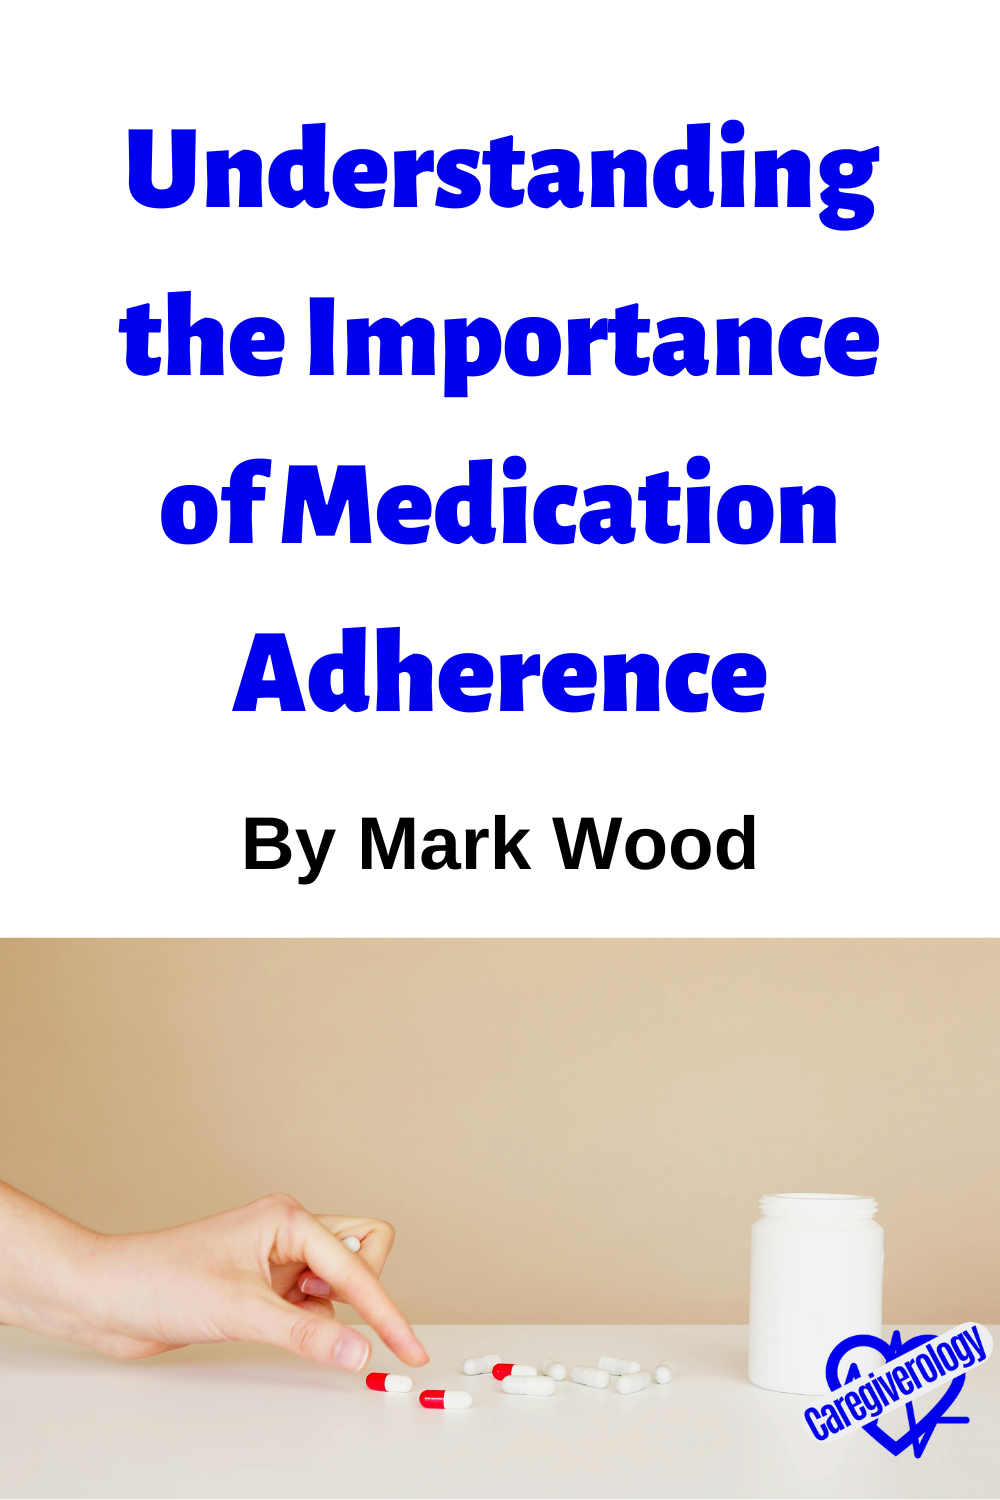 medication adherence pin